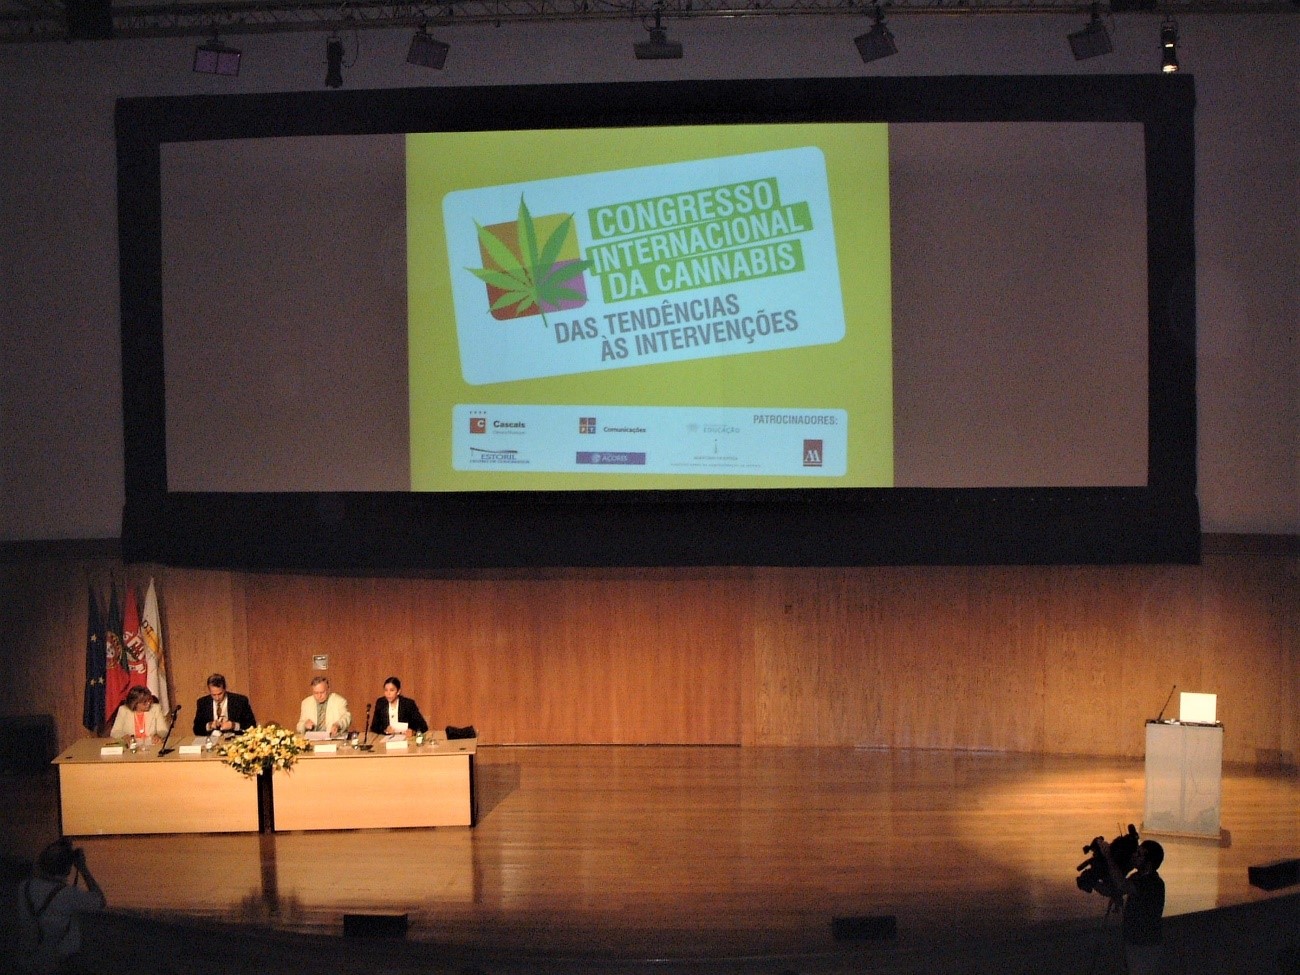 Foto 1 de Congresso Internacional da Cannabis 2004